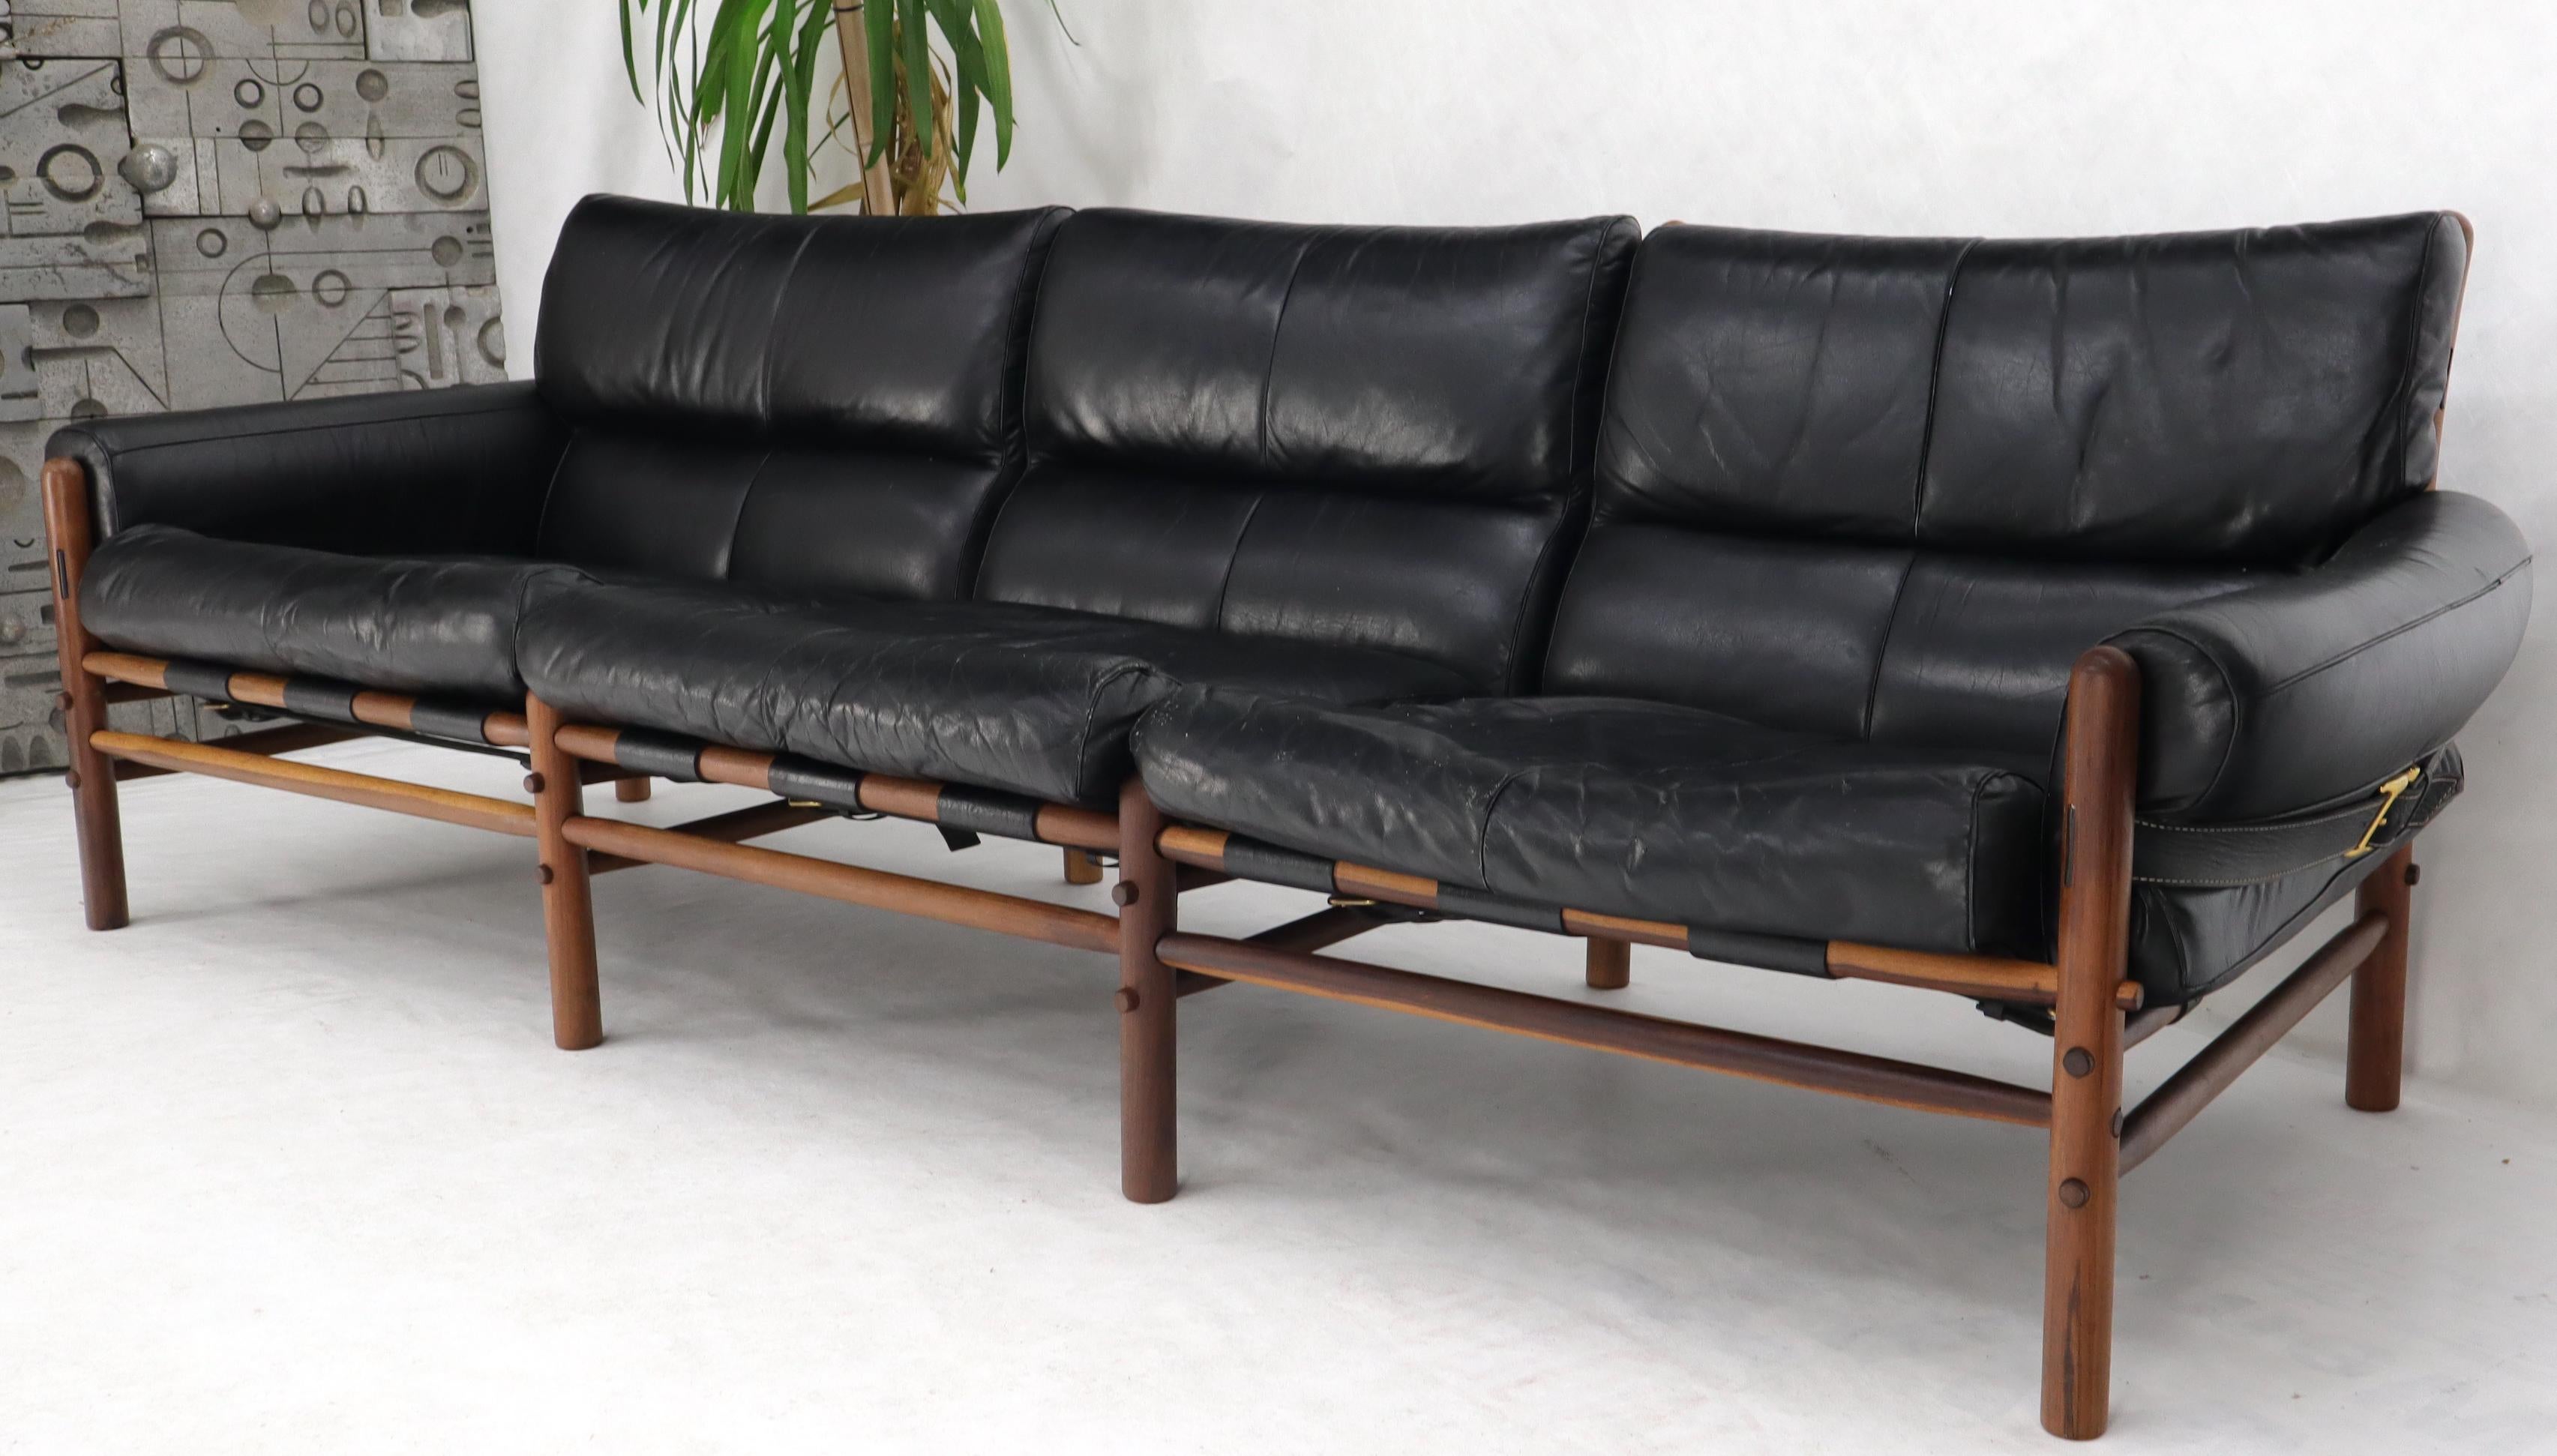 Outsranding Danish Mid-Century Modern black leather sofa teak frame by Arne Norell.